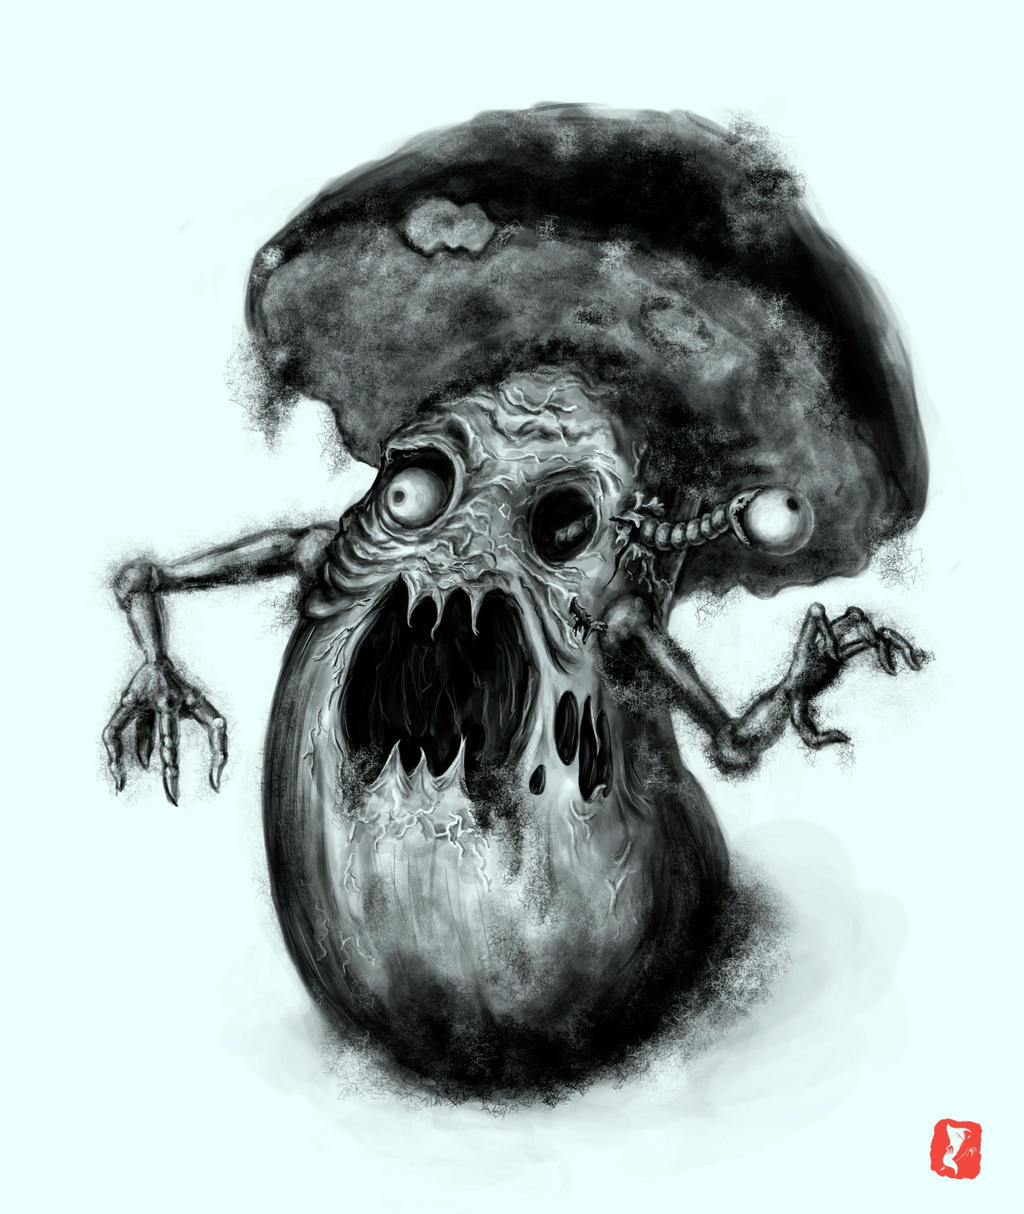 Sad Mushroom by ZeTrystan on DeviantArt